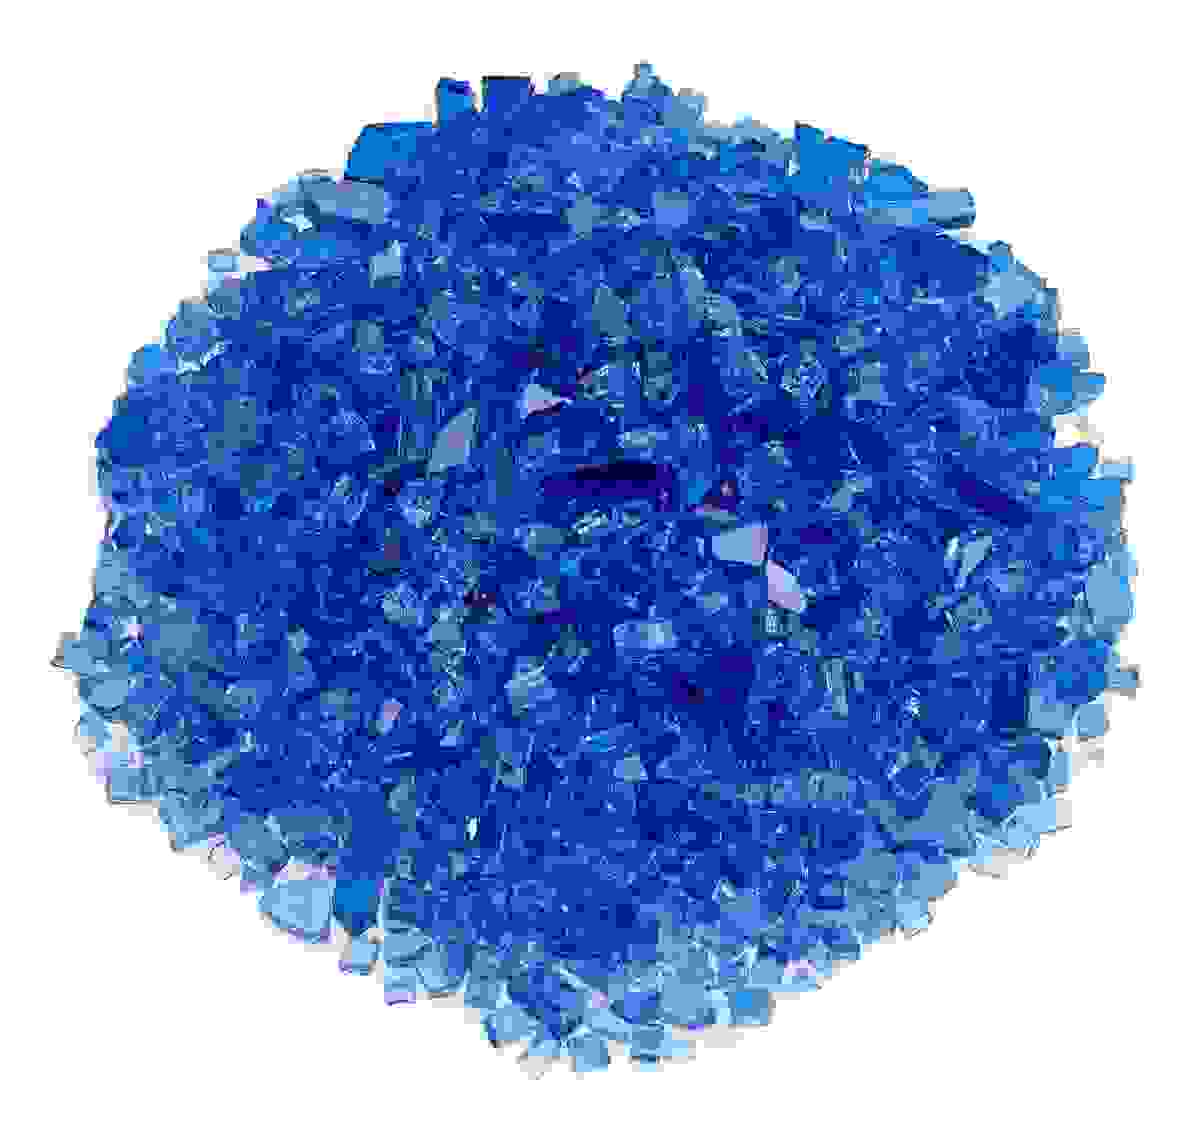 1/4 inch Cobalt Blue fire glass, 10lb jar